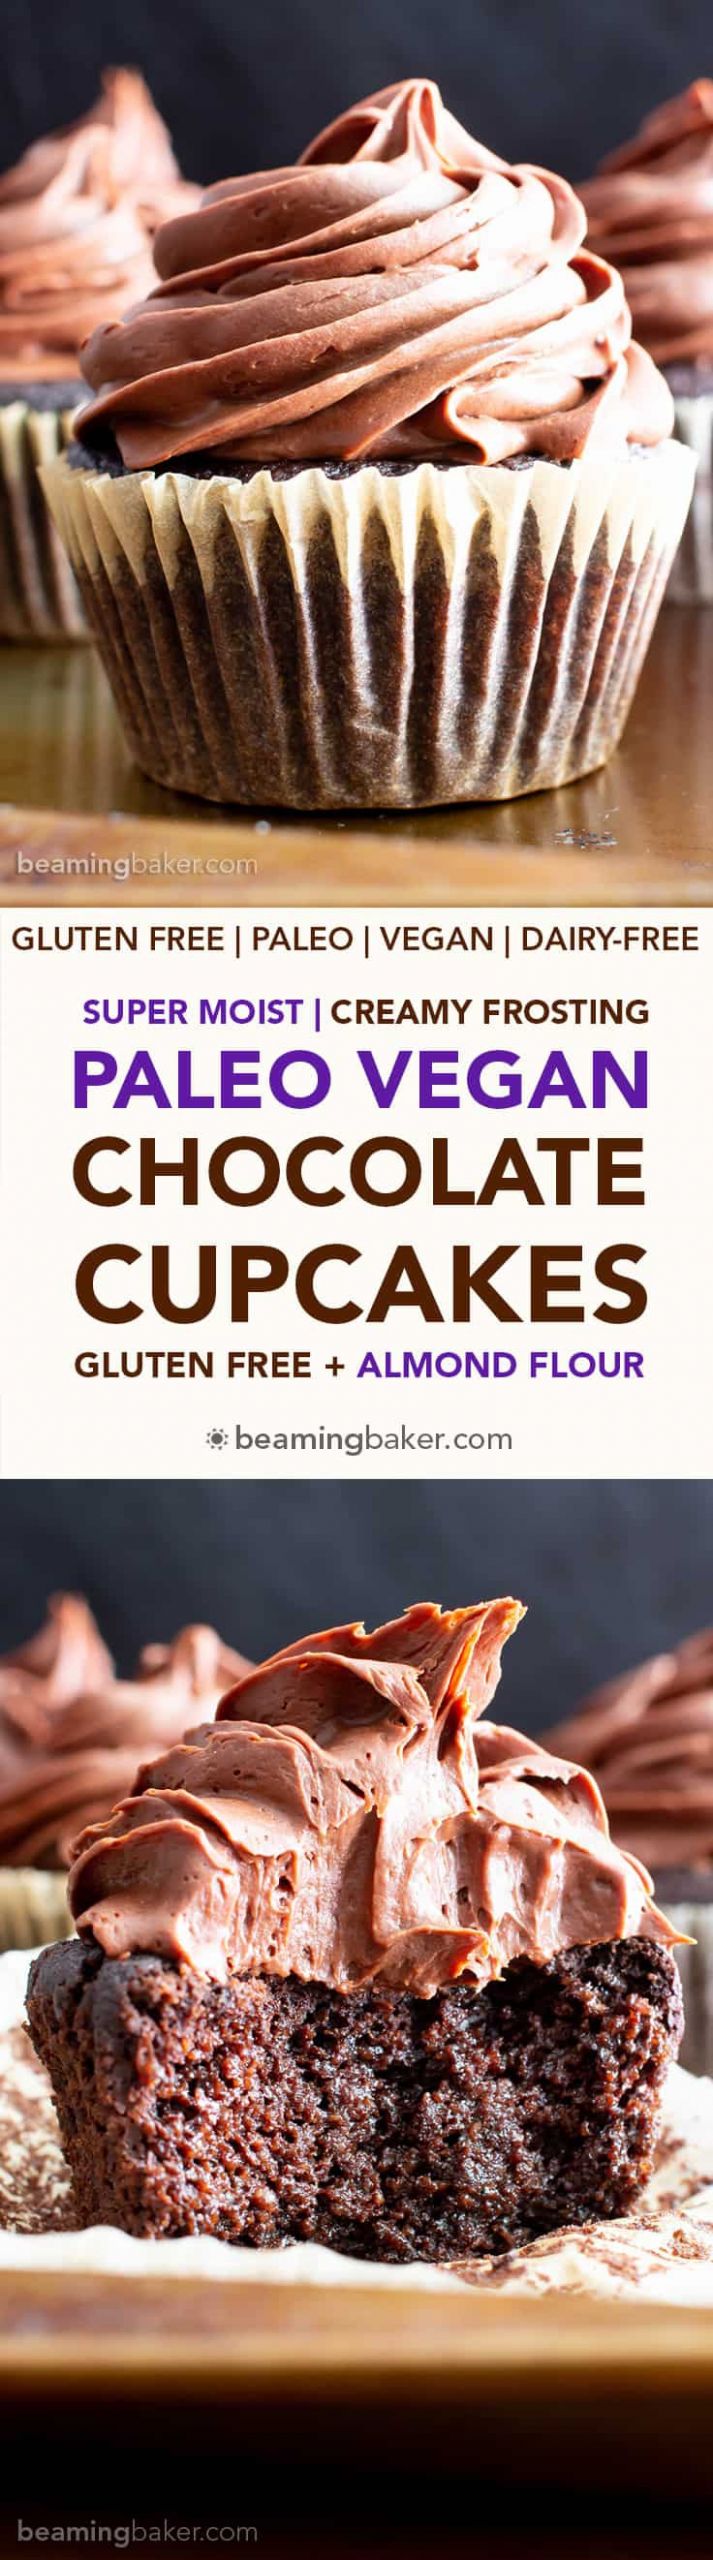 Paleo Cupcakes Recipe
 Paleo Chocolate Cupcakes Recipe Almond Flour Vegan